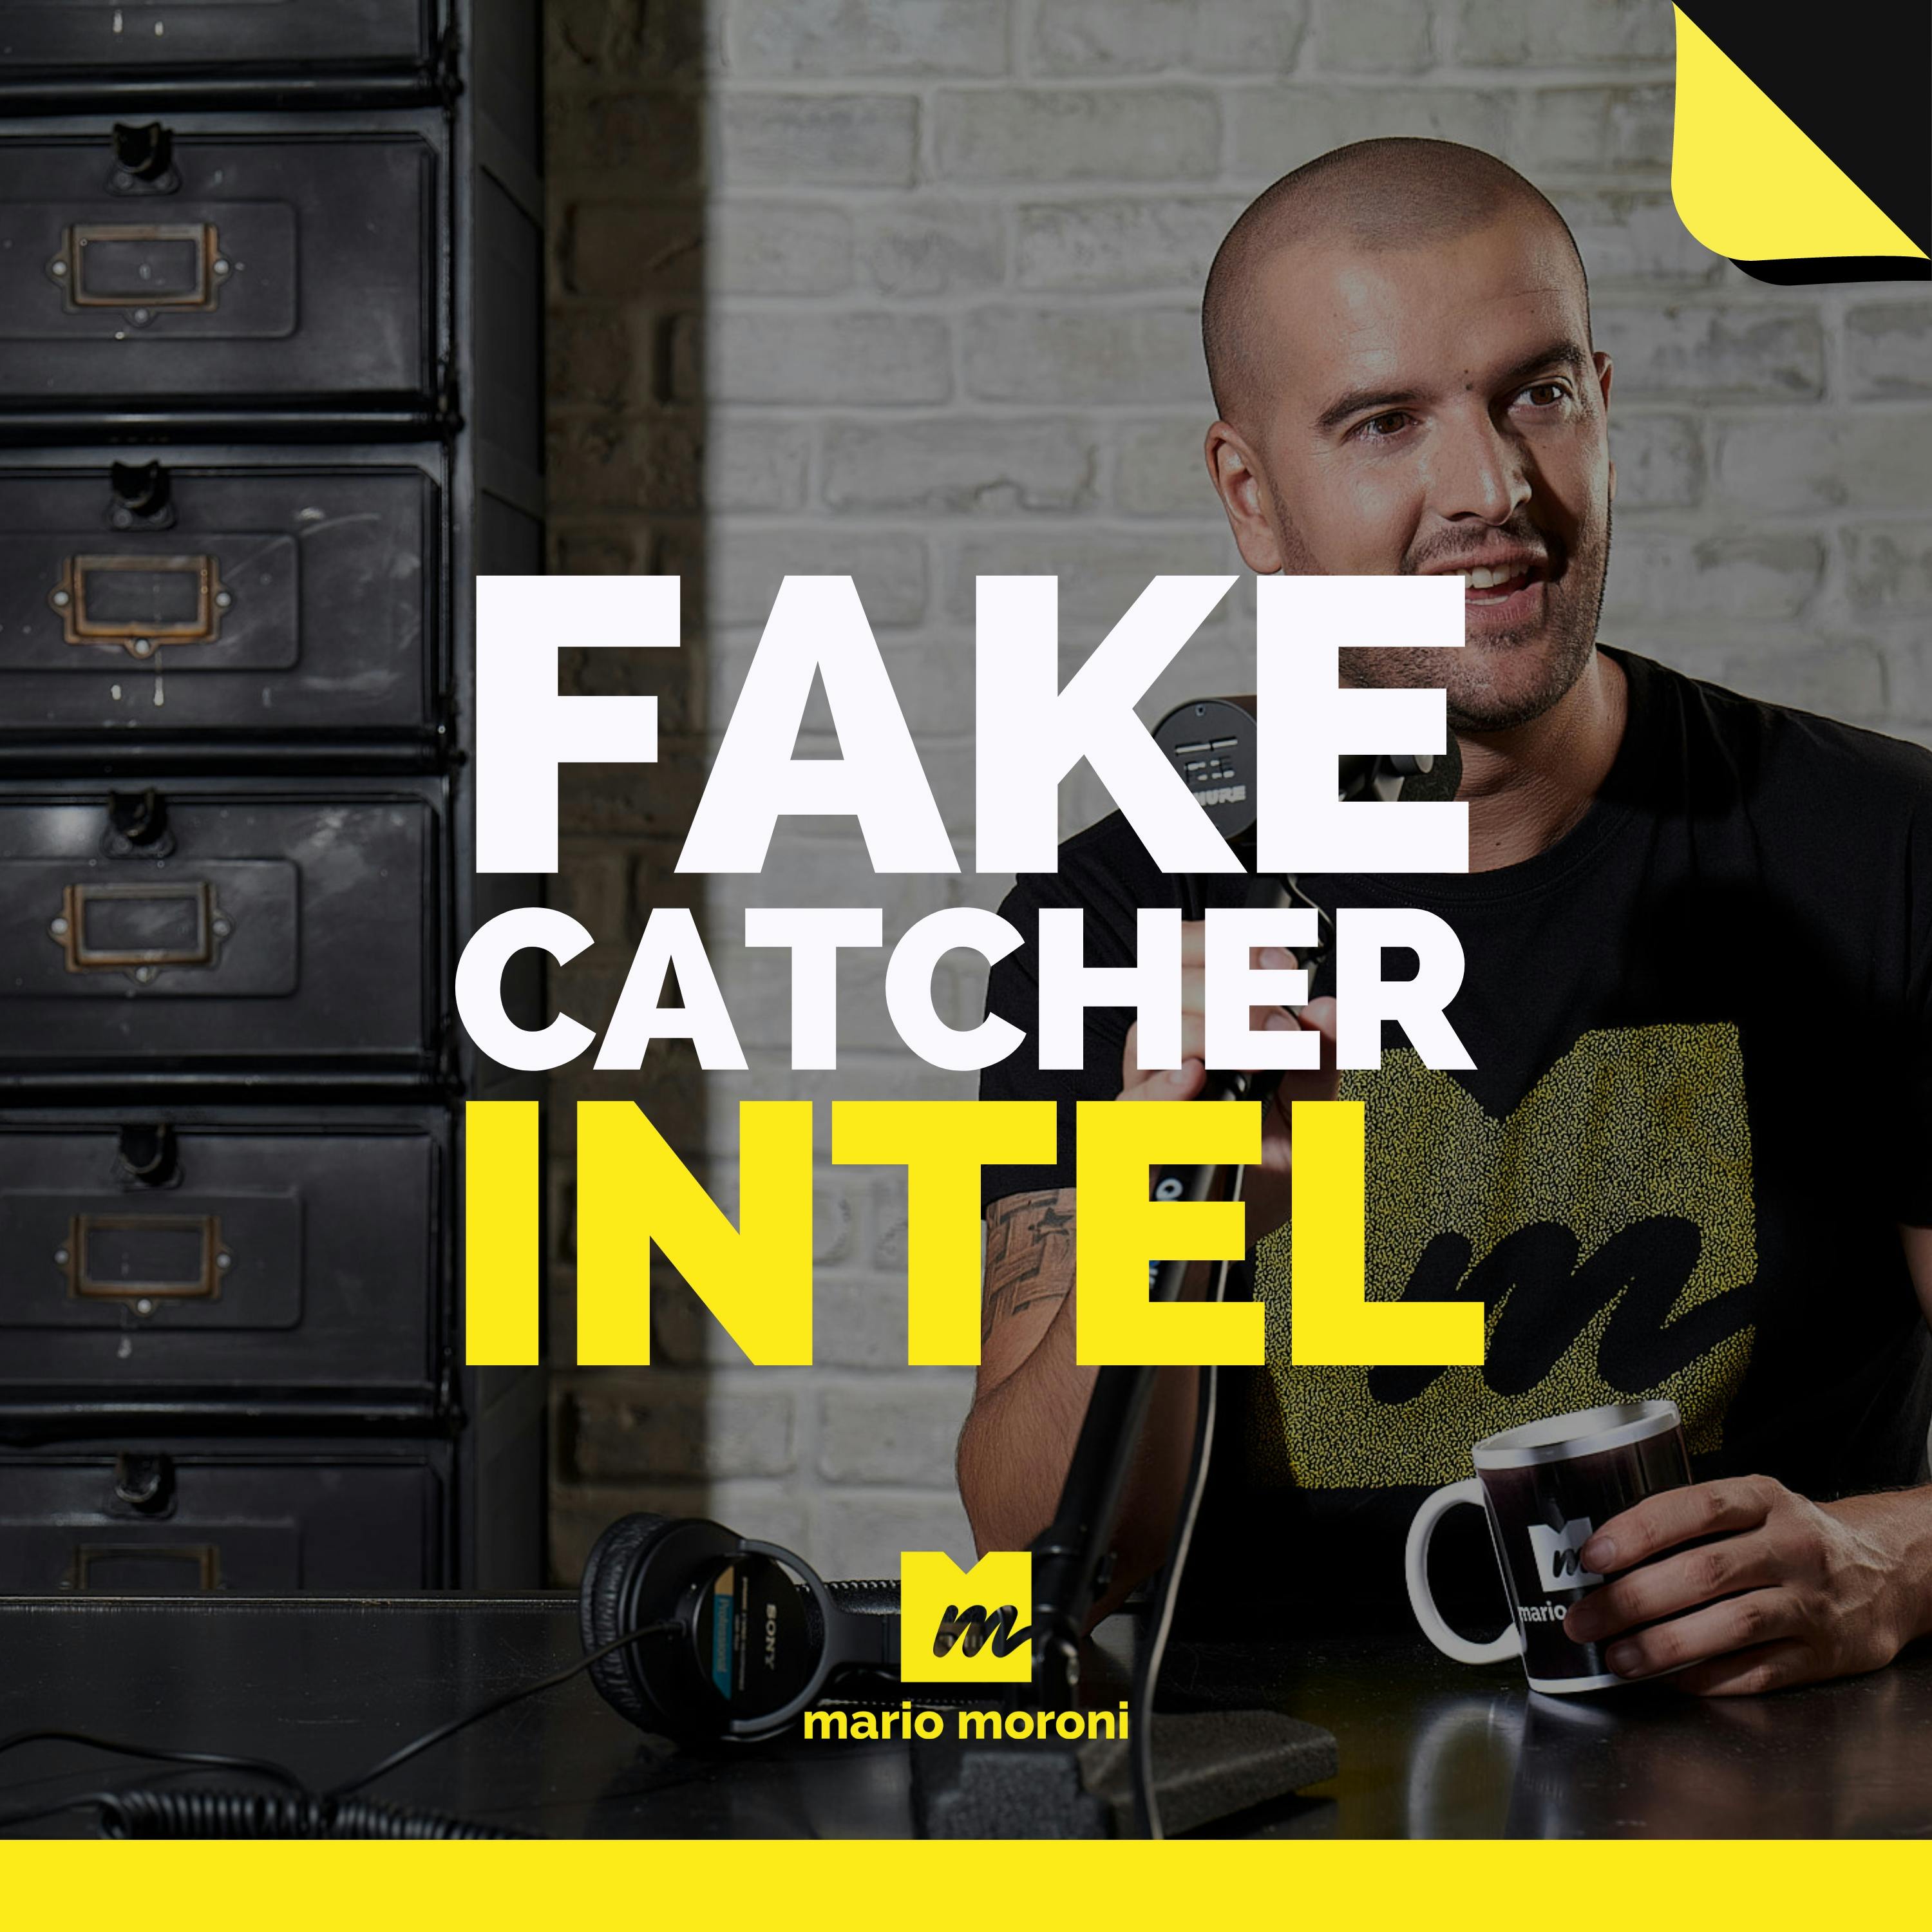 Fake Catcher di Intel riconosce il 96% dei deepfake grazie al fusso sanguigno del viso